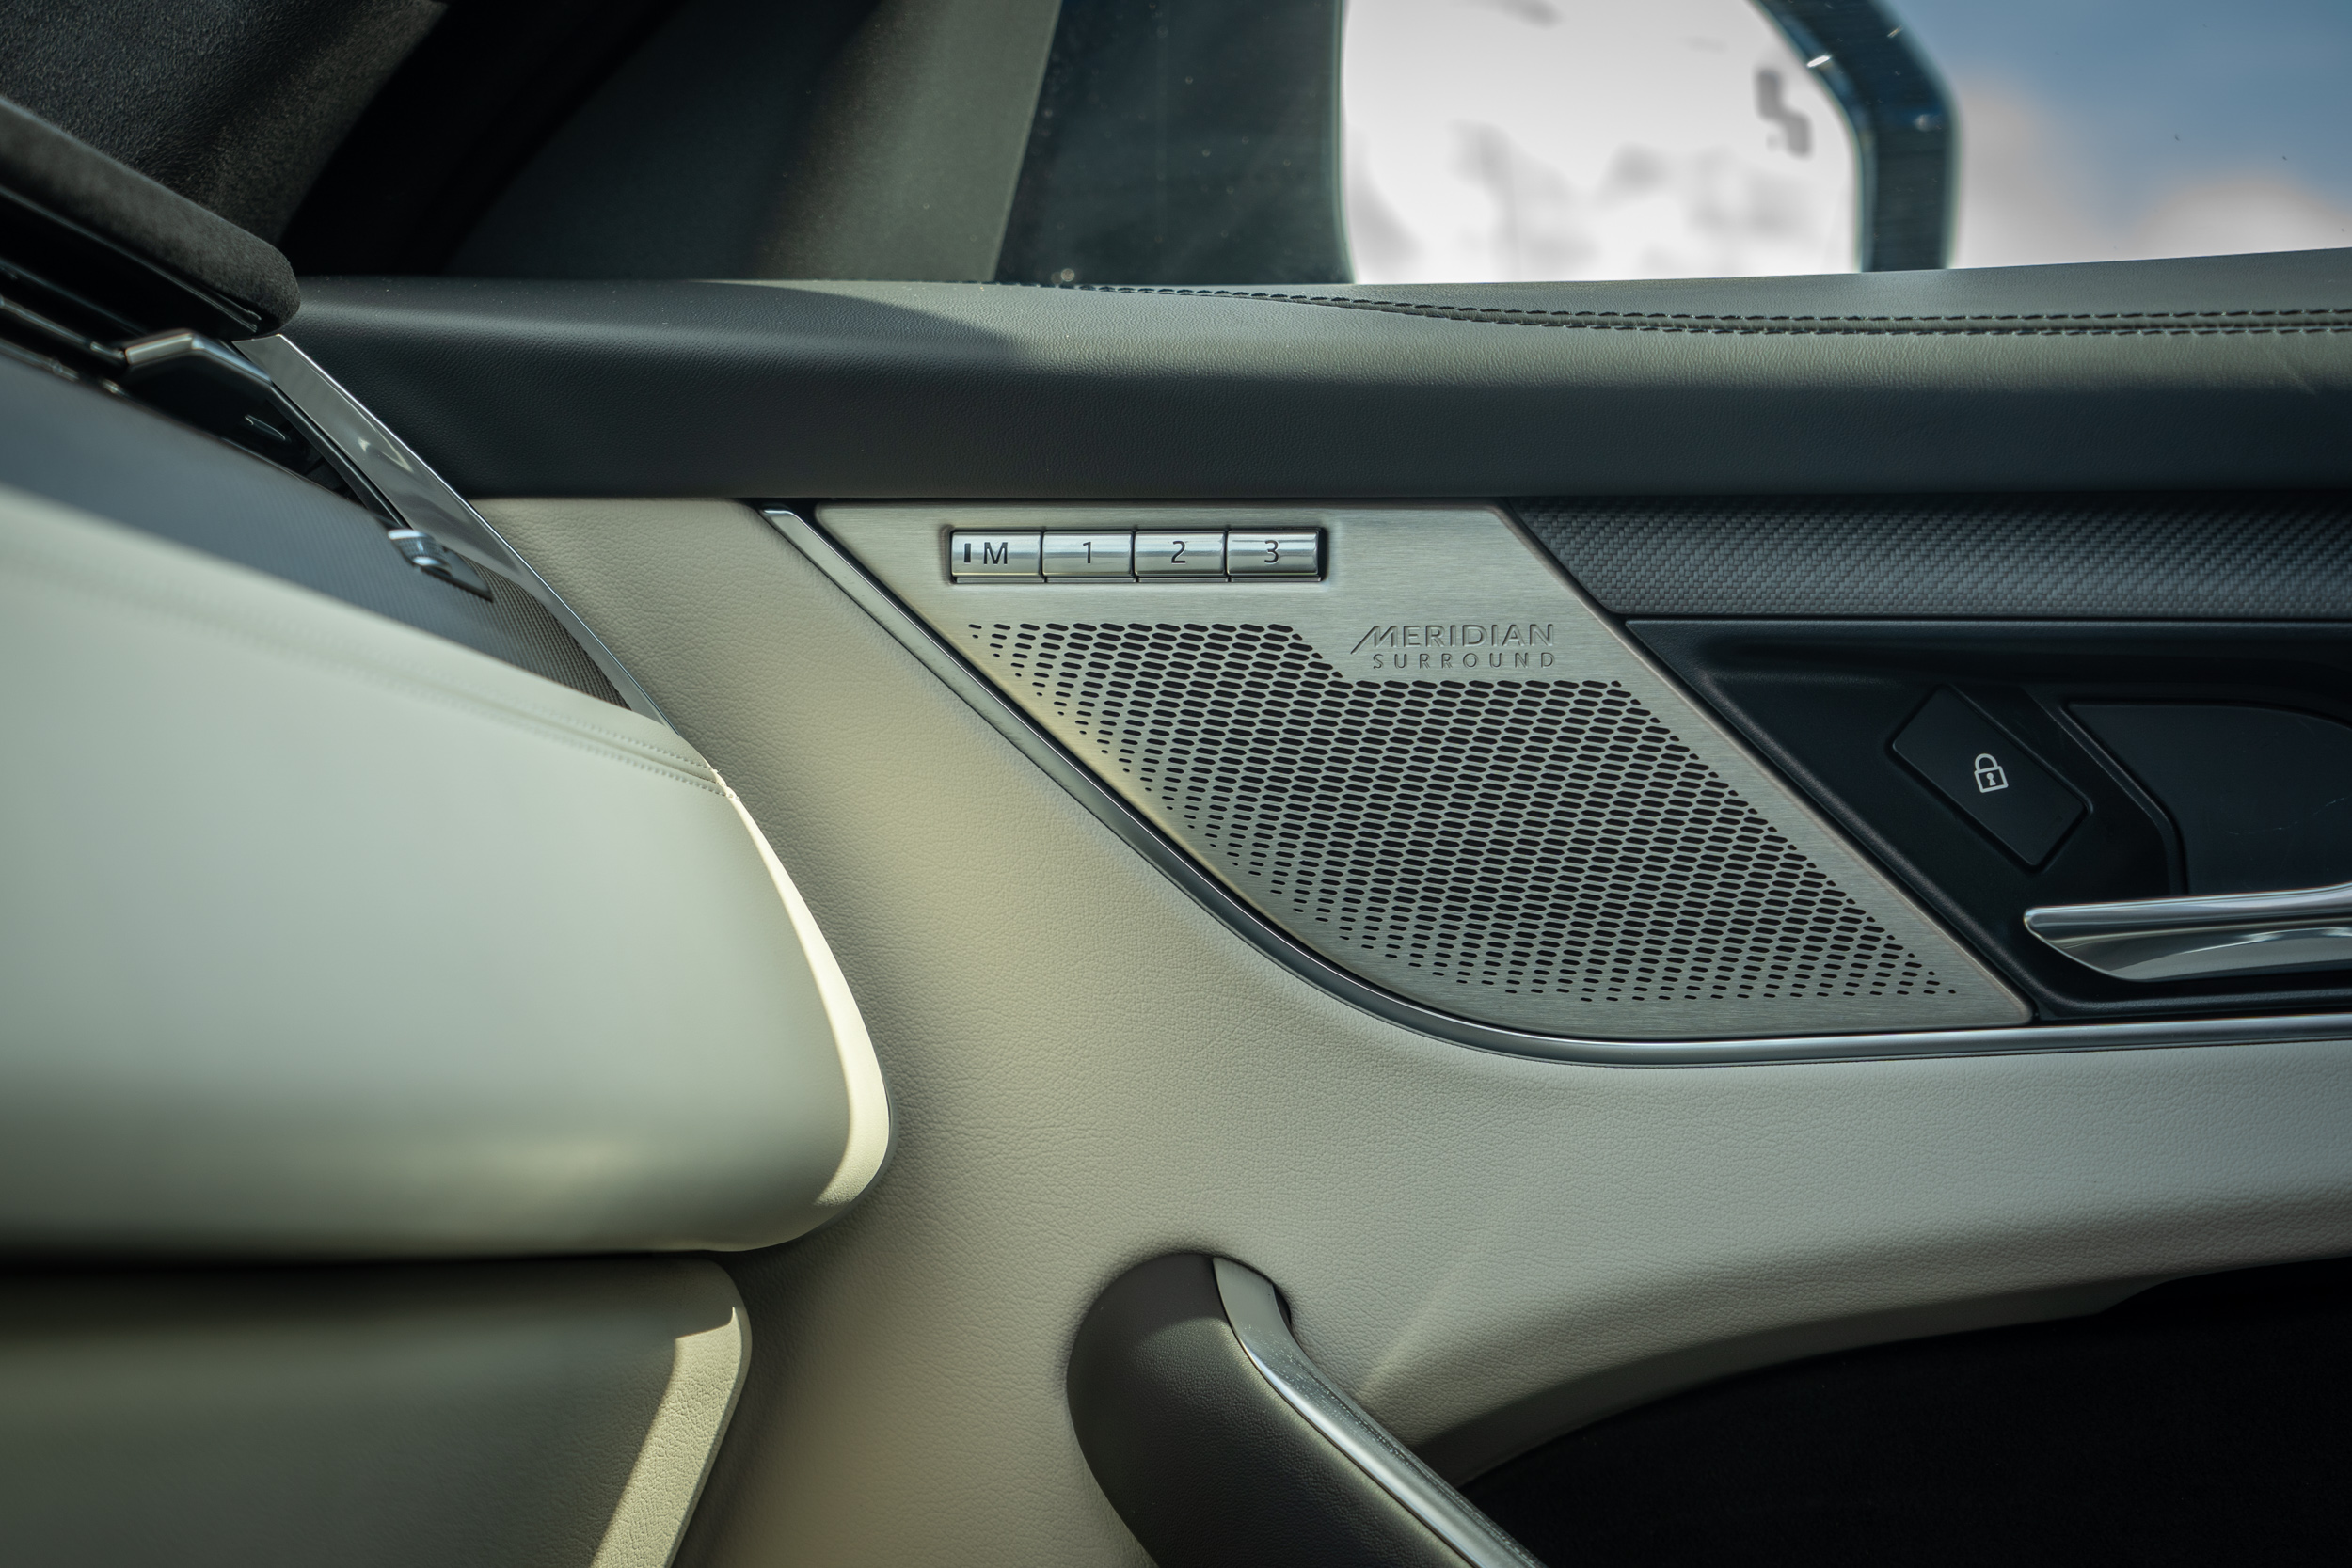 試駕車款選配 Meridian 650W 環繞音響系統，要價新台幣 13 萬元。